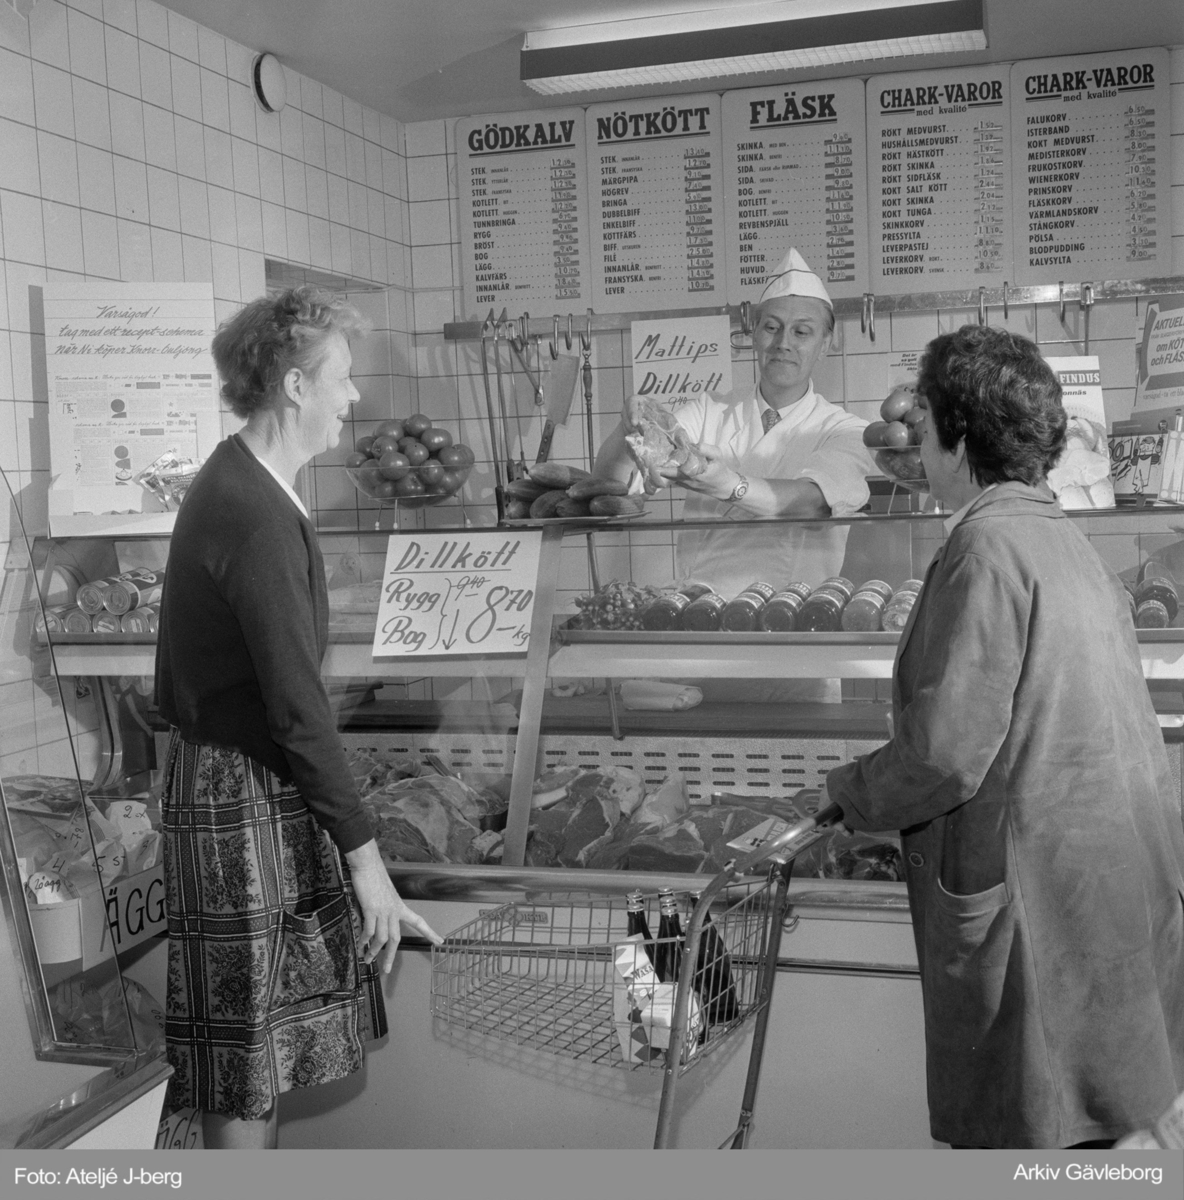 Å-Jis livsmedel 1961. Hillmansgatan 24, Gävle.